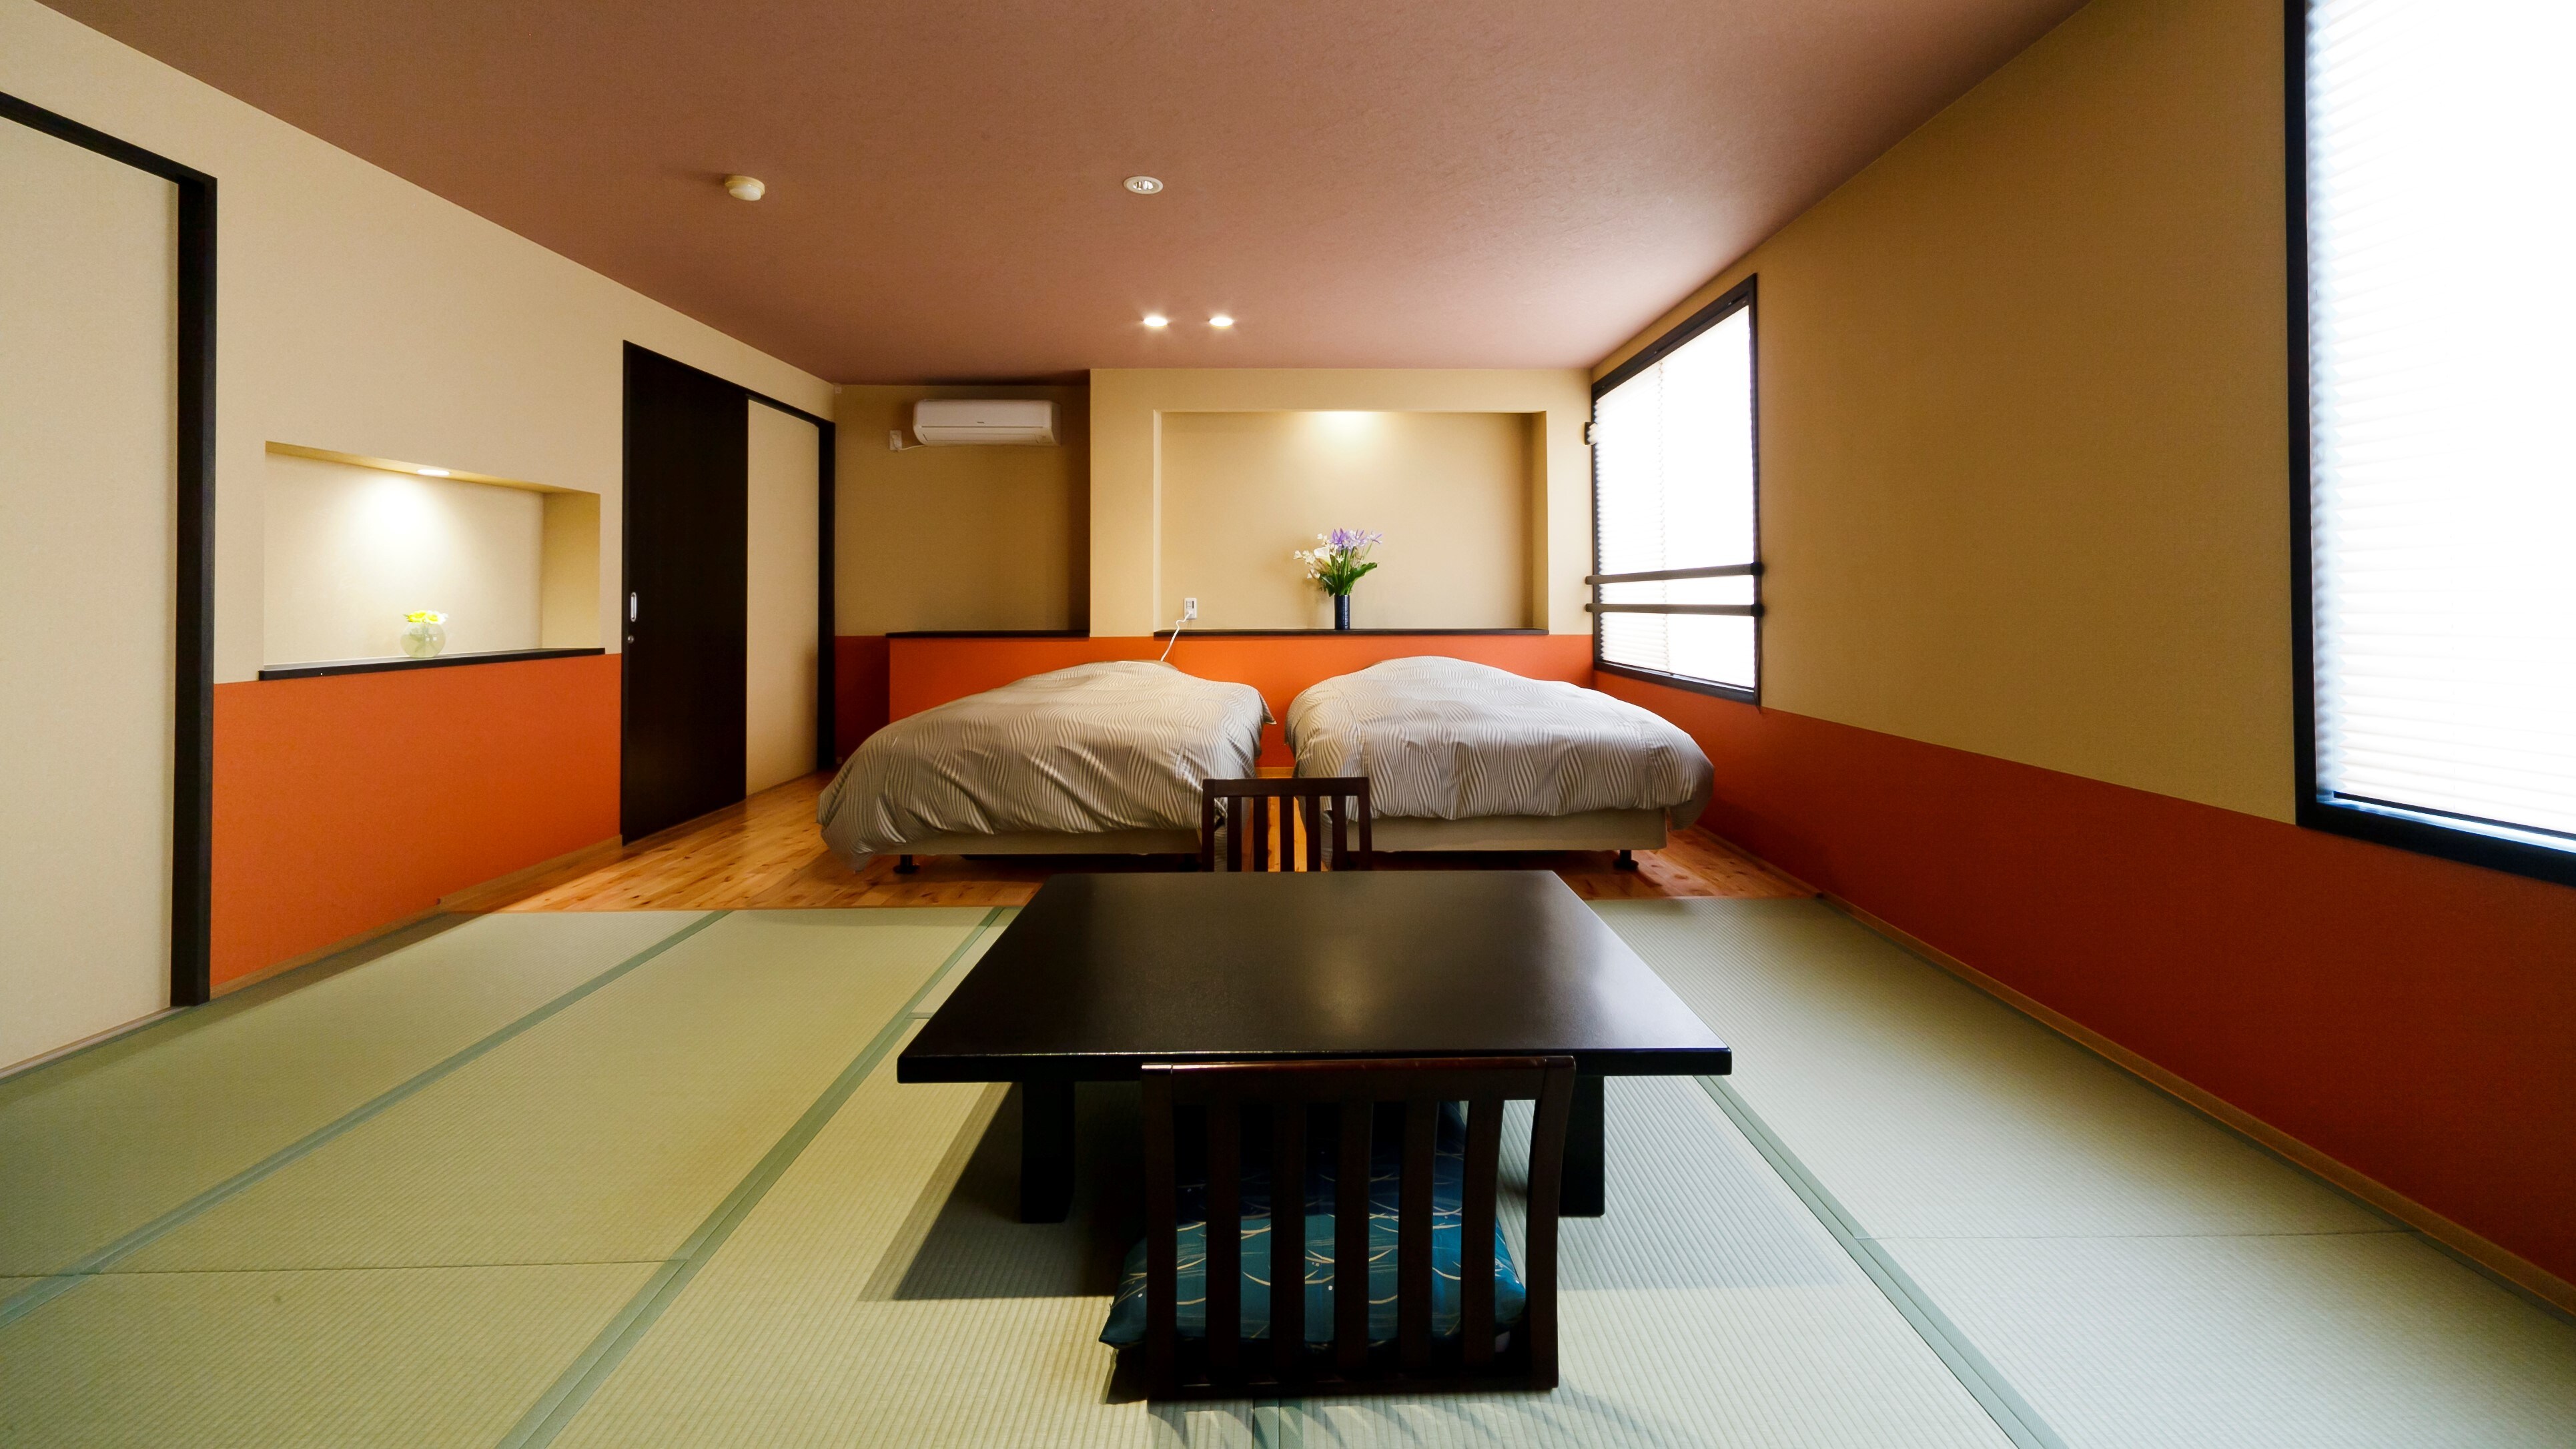 Kamar gaya Jepang-Barat sisi gunung Kamar gaya Jepang 10 tikar tatami + 2 tempat tidur semi-double (8 tikar tatami)